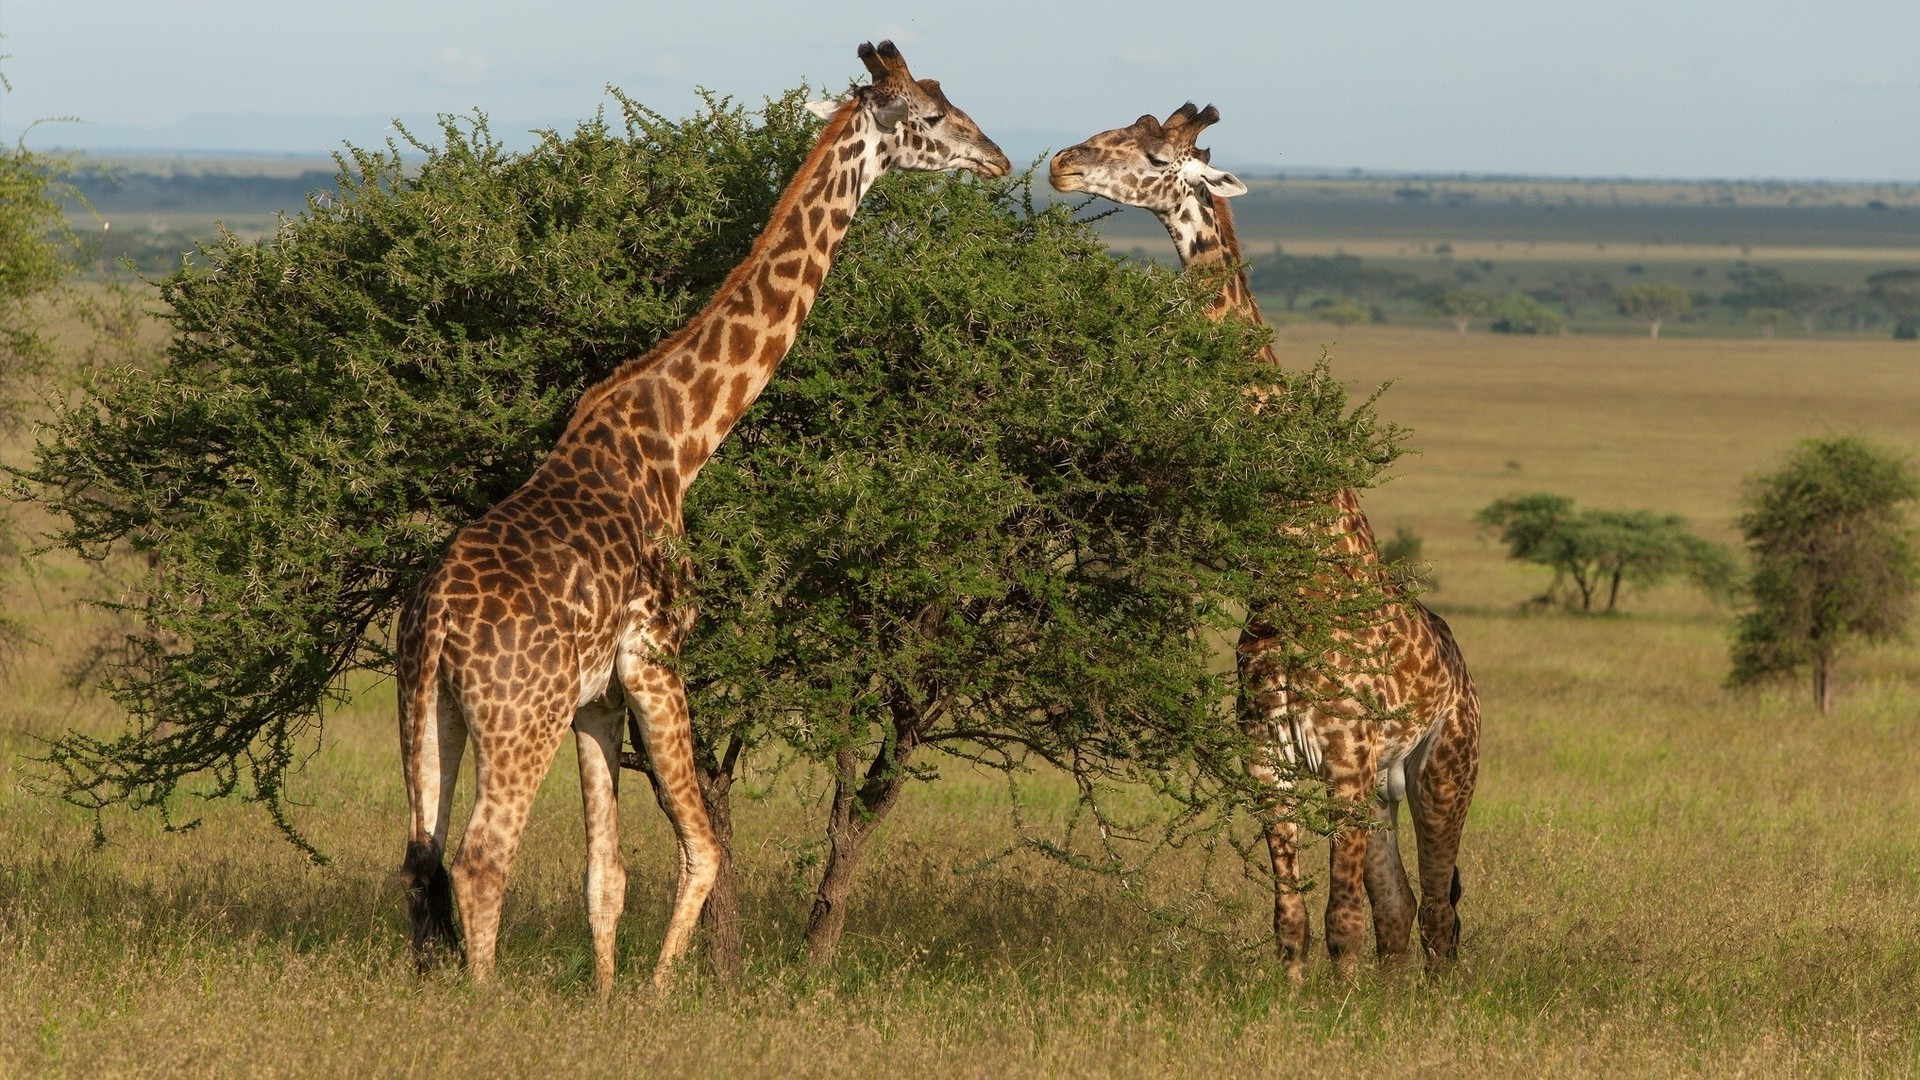 жирафы жираф млекопитающее дикой природы сафари саванна природа пастбища трава дикий животное буш на открытом воздухе высокий масаи резерв травоядное парк шея среды